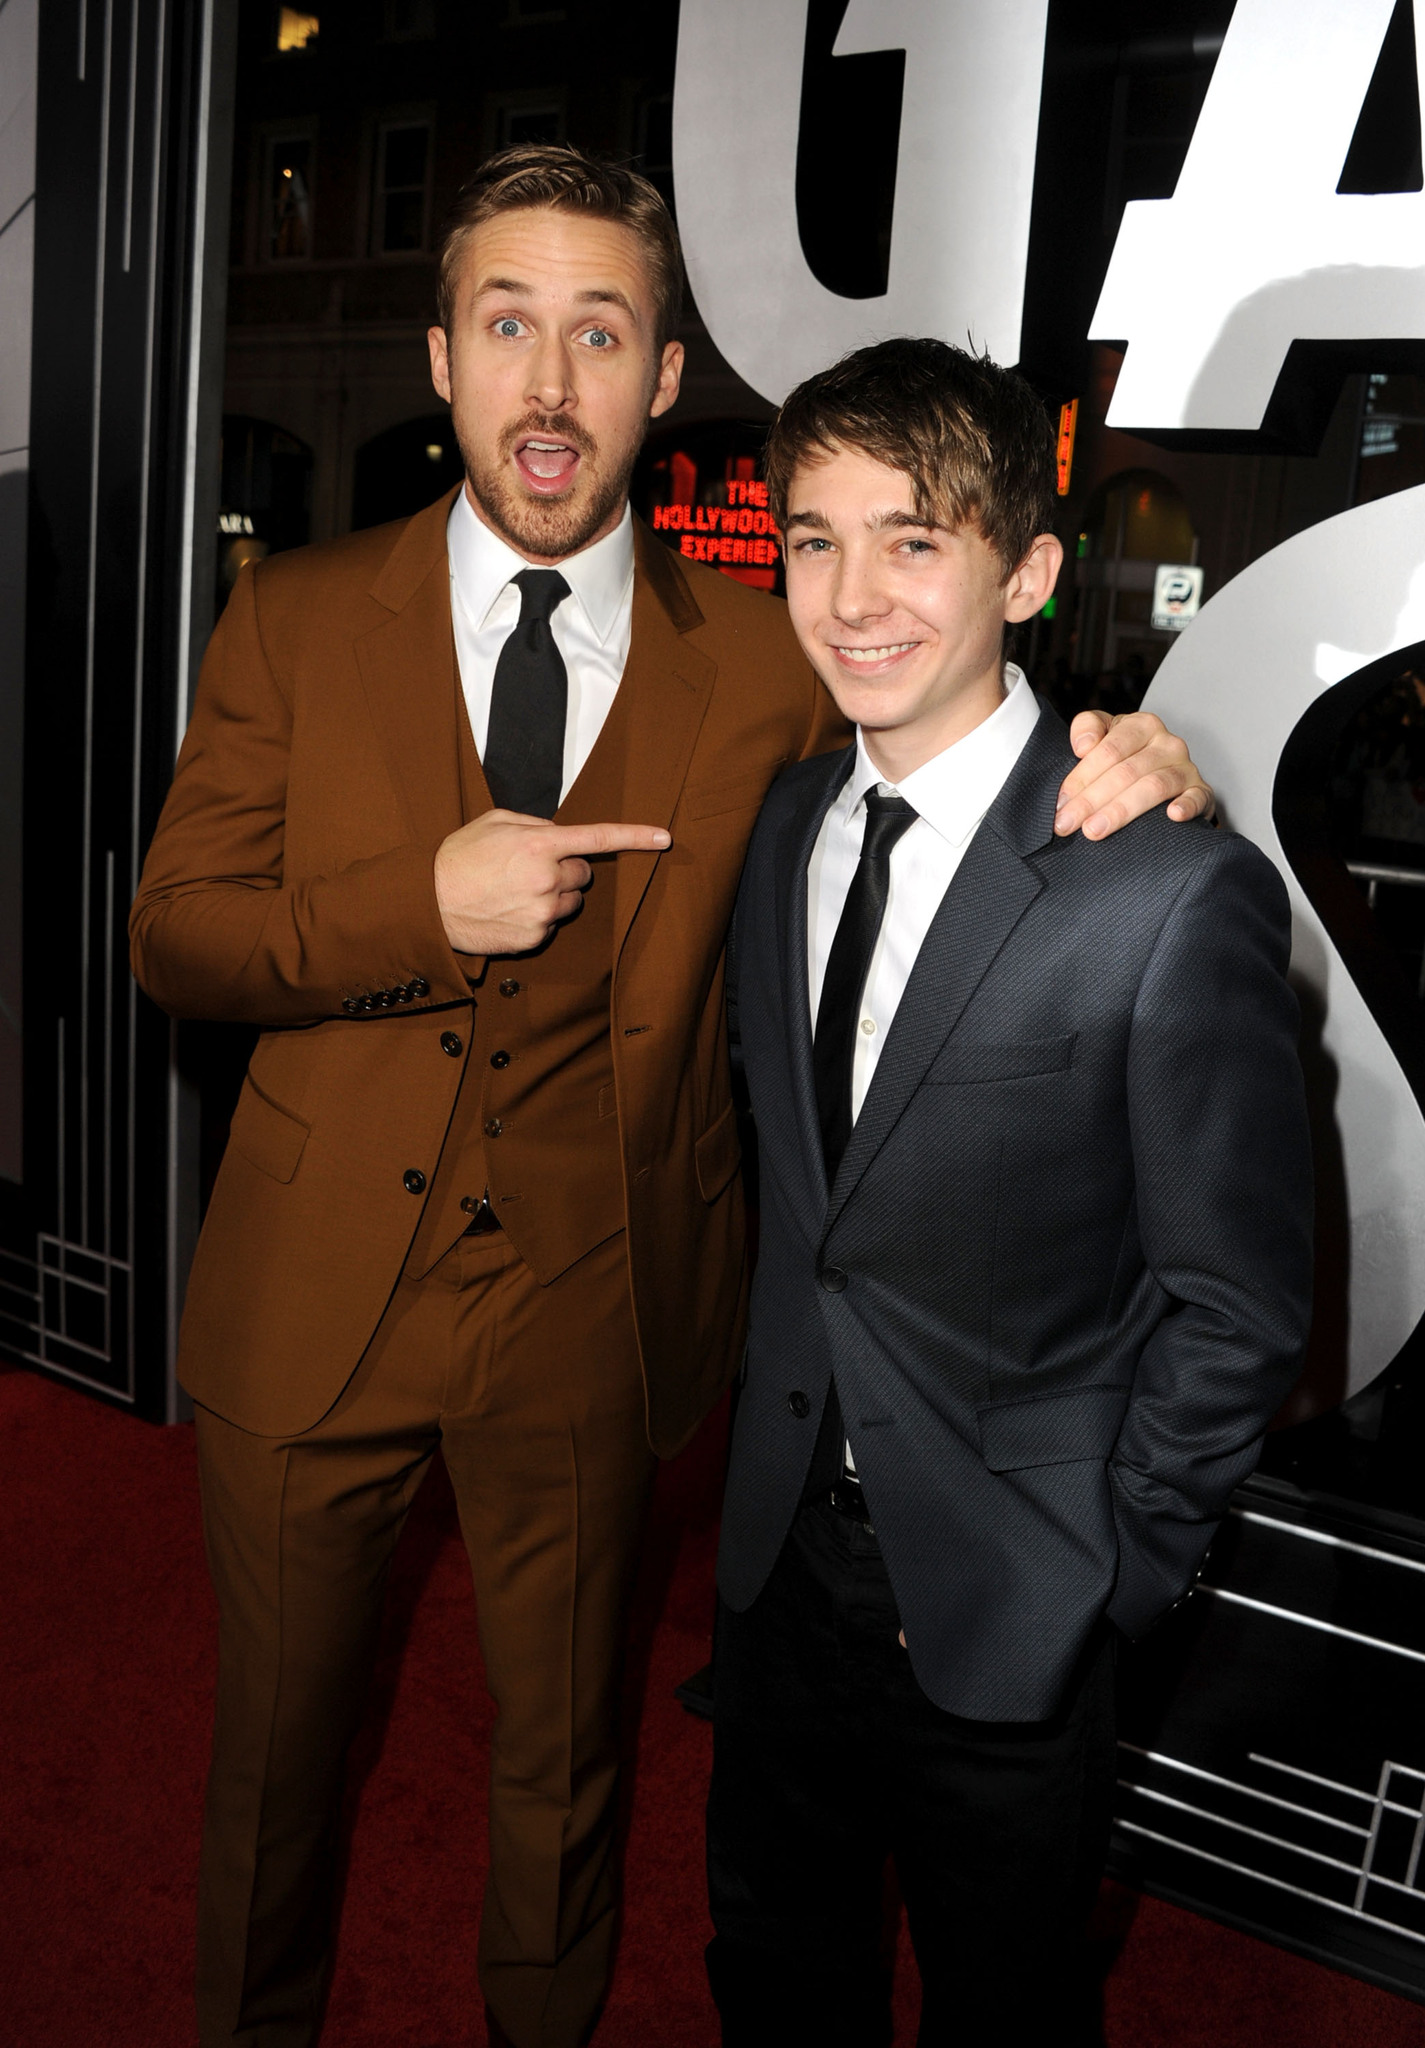 Ryan Gosling and Austin Abrams at event of Gangsteriu medziotojai (2013)